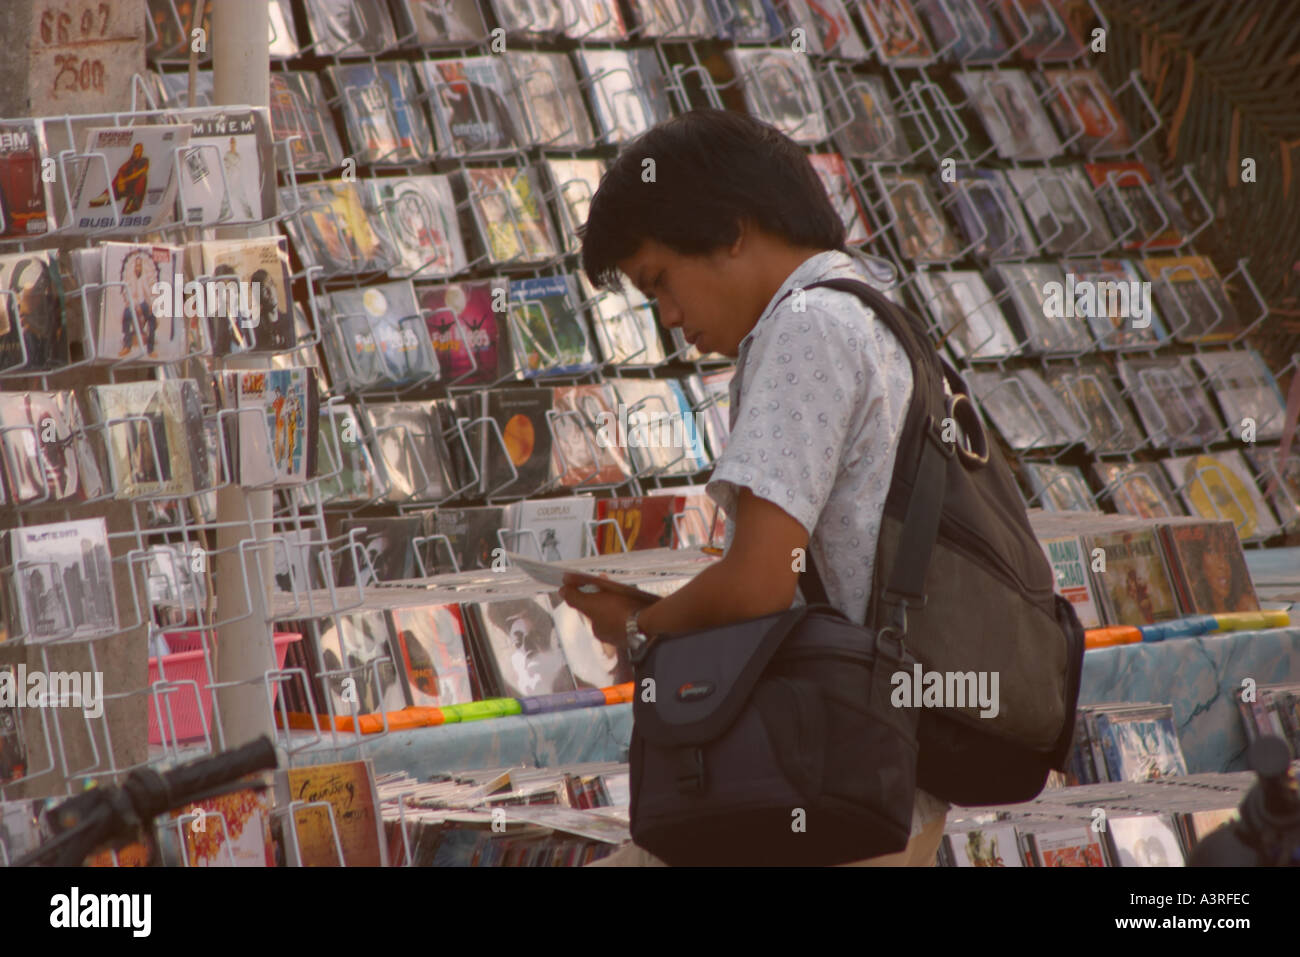 Persona in cerca di copie illegali di CD e DVD, Bangkok, Thailandia Foto Stock